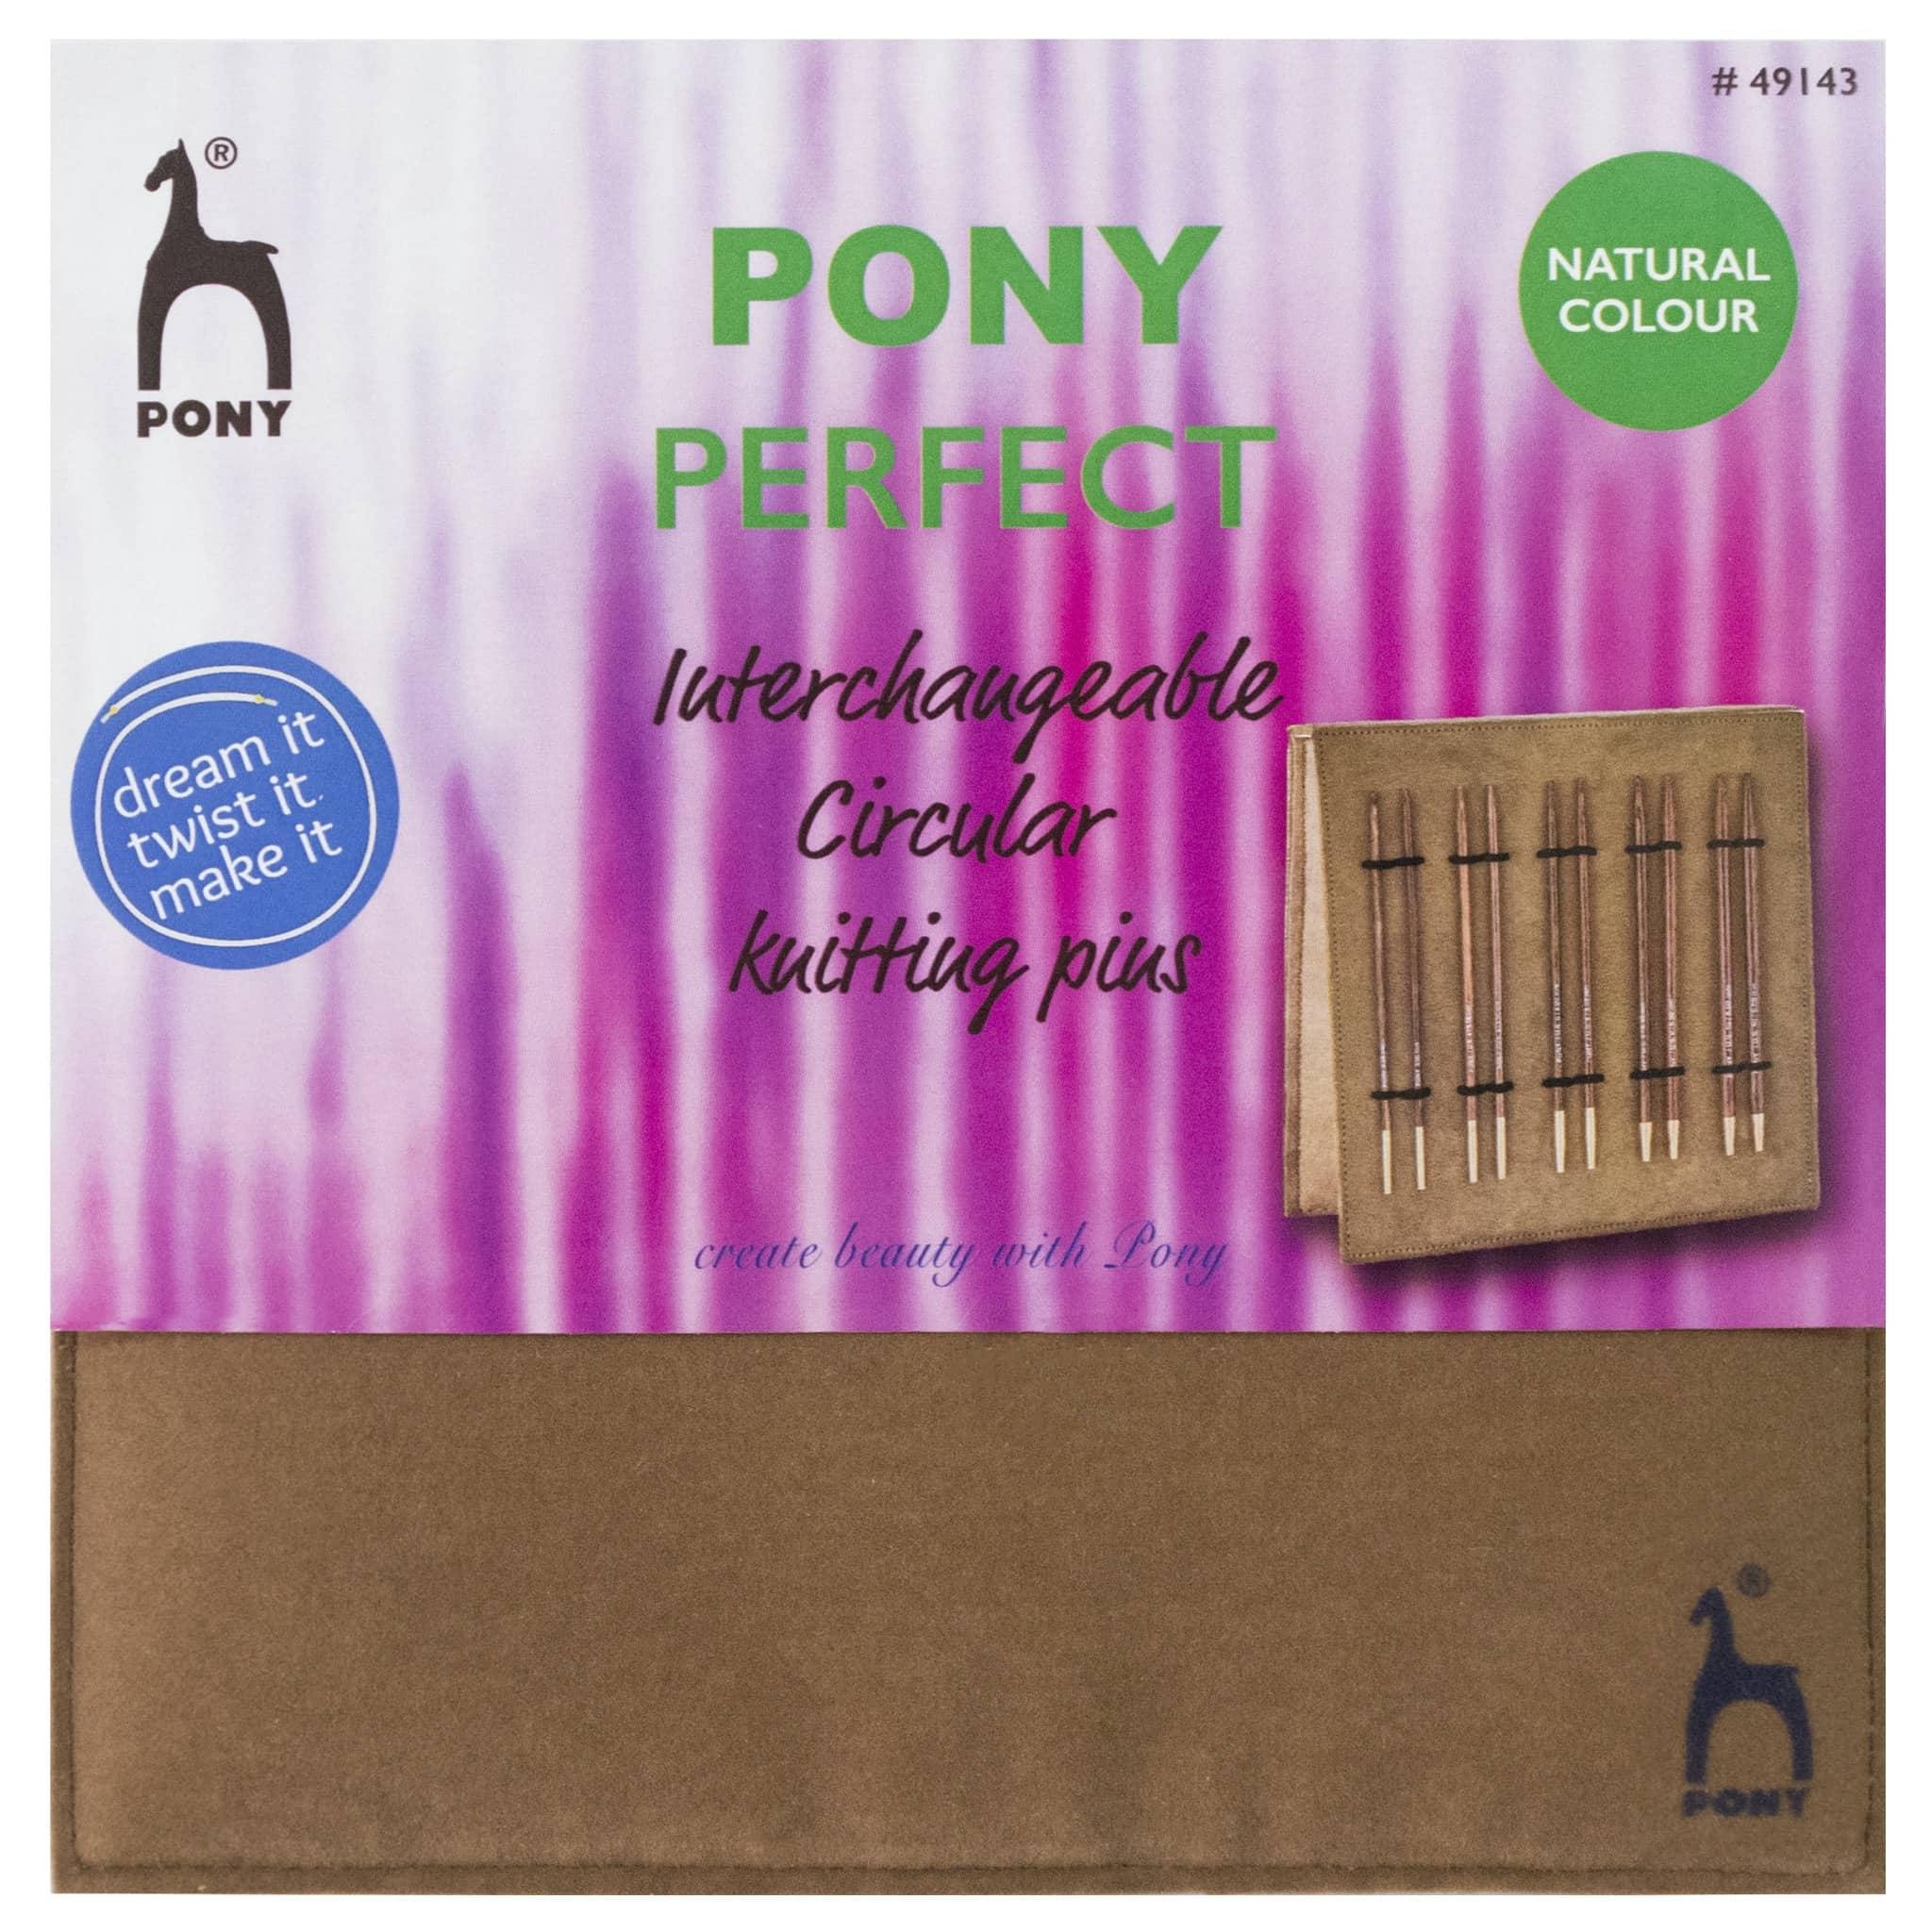 Pony Perfect Circular Interchangeable Luxury Gift Set